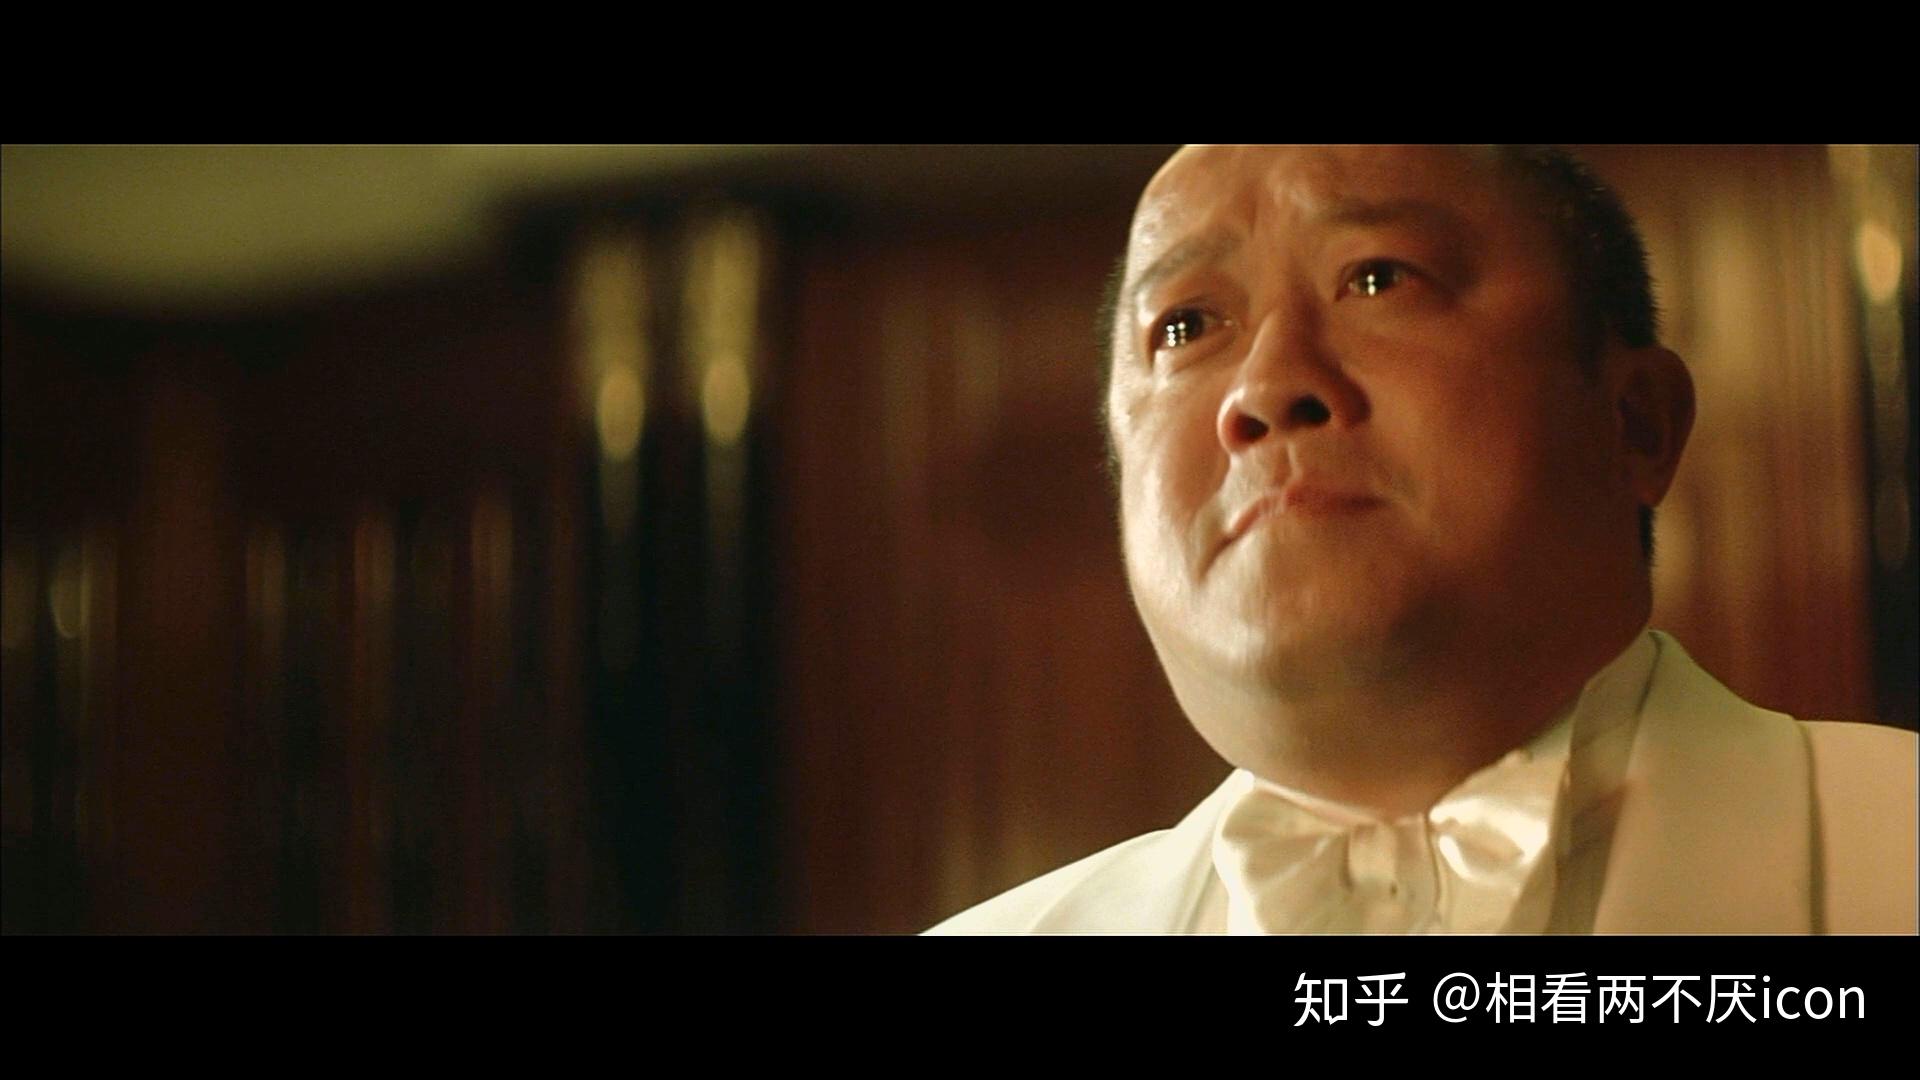 香港电影《无间道Ⅱ》——出来混，迟早要还的 - 哔哩哔哩